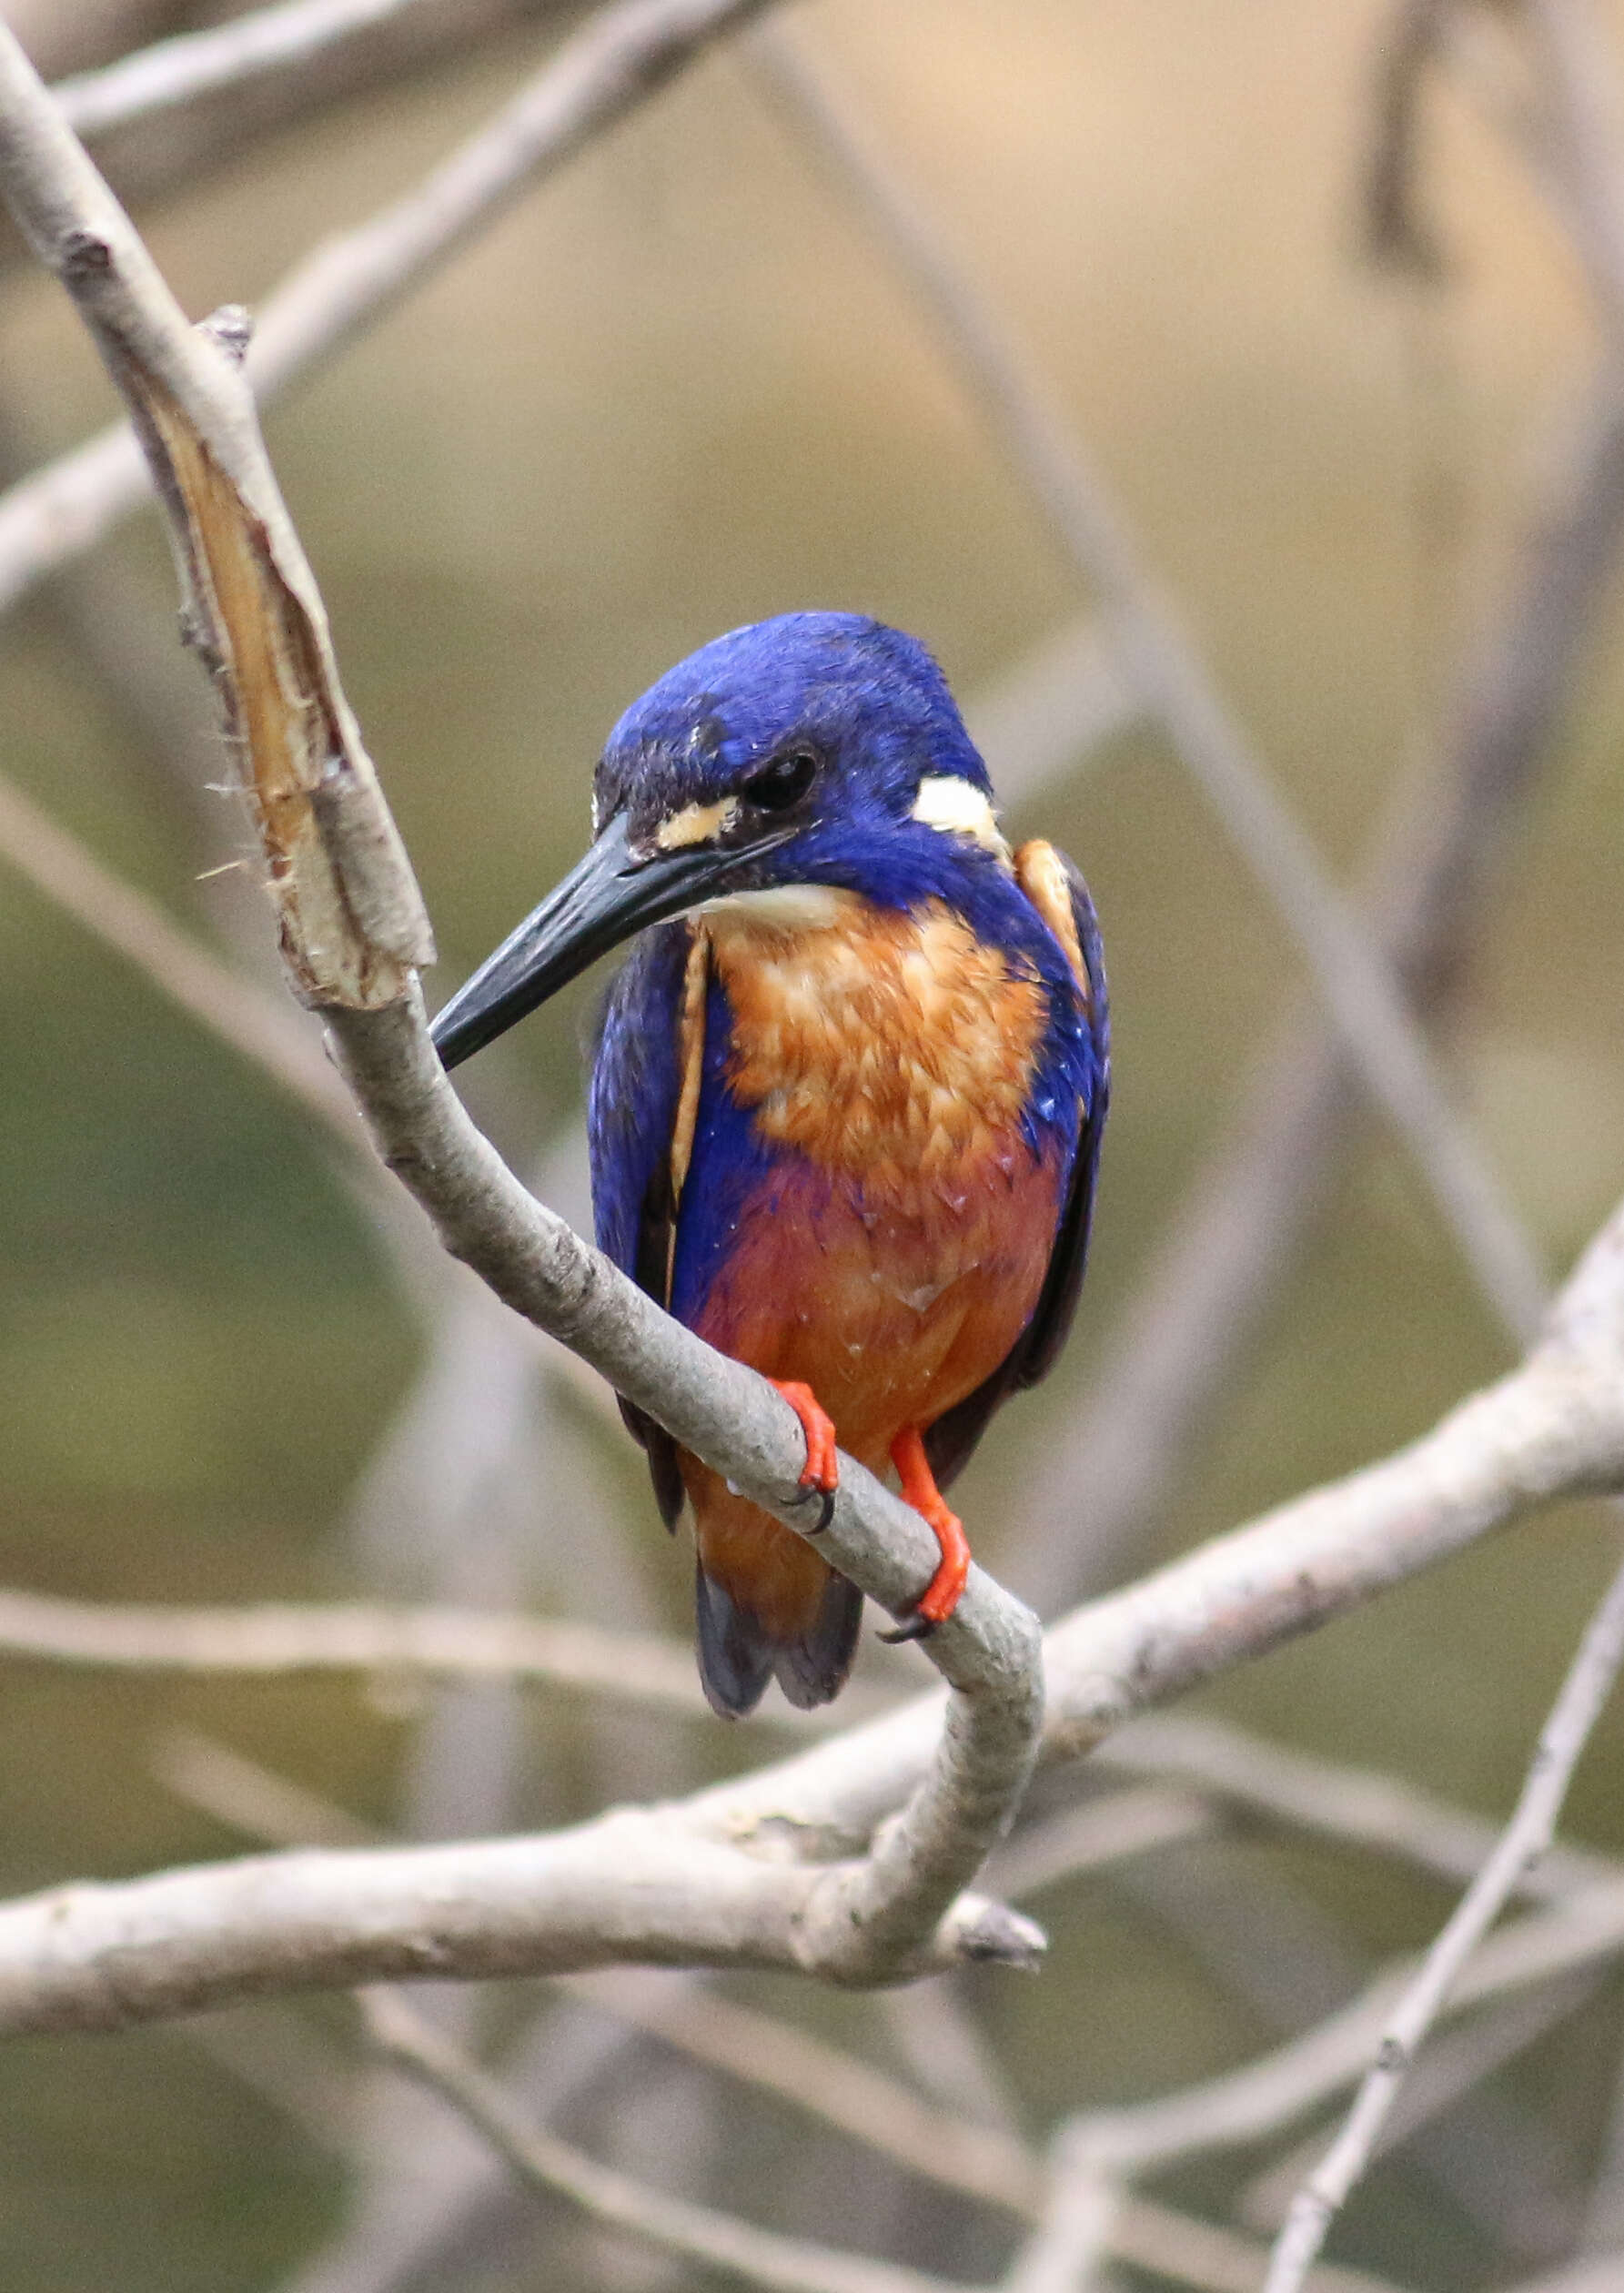 Image of Azure Kingfisher